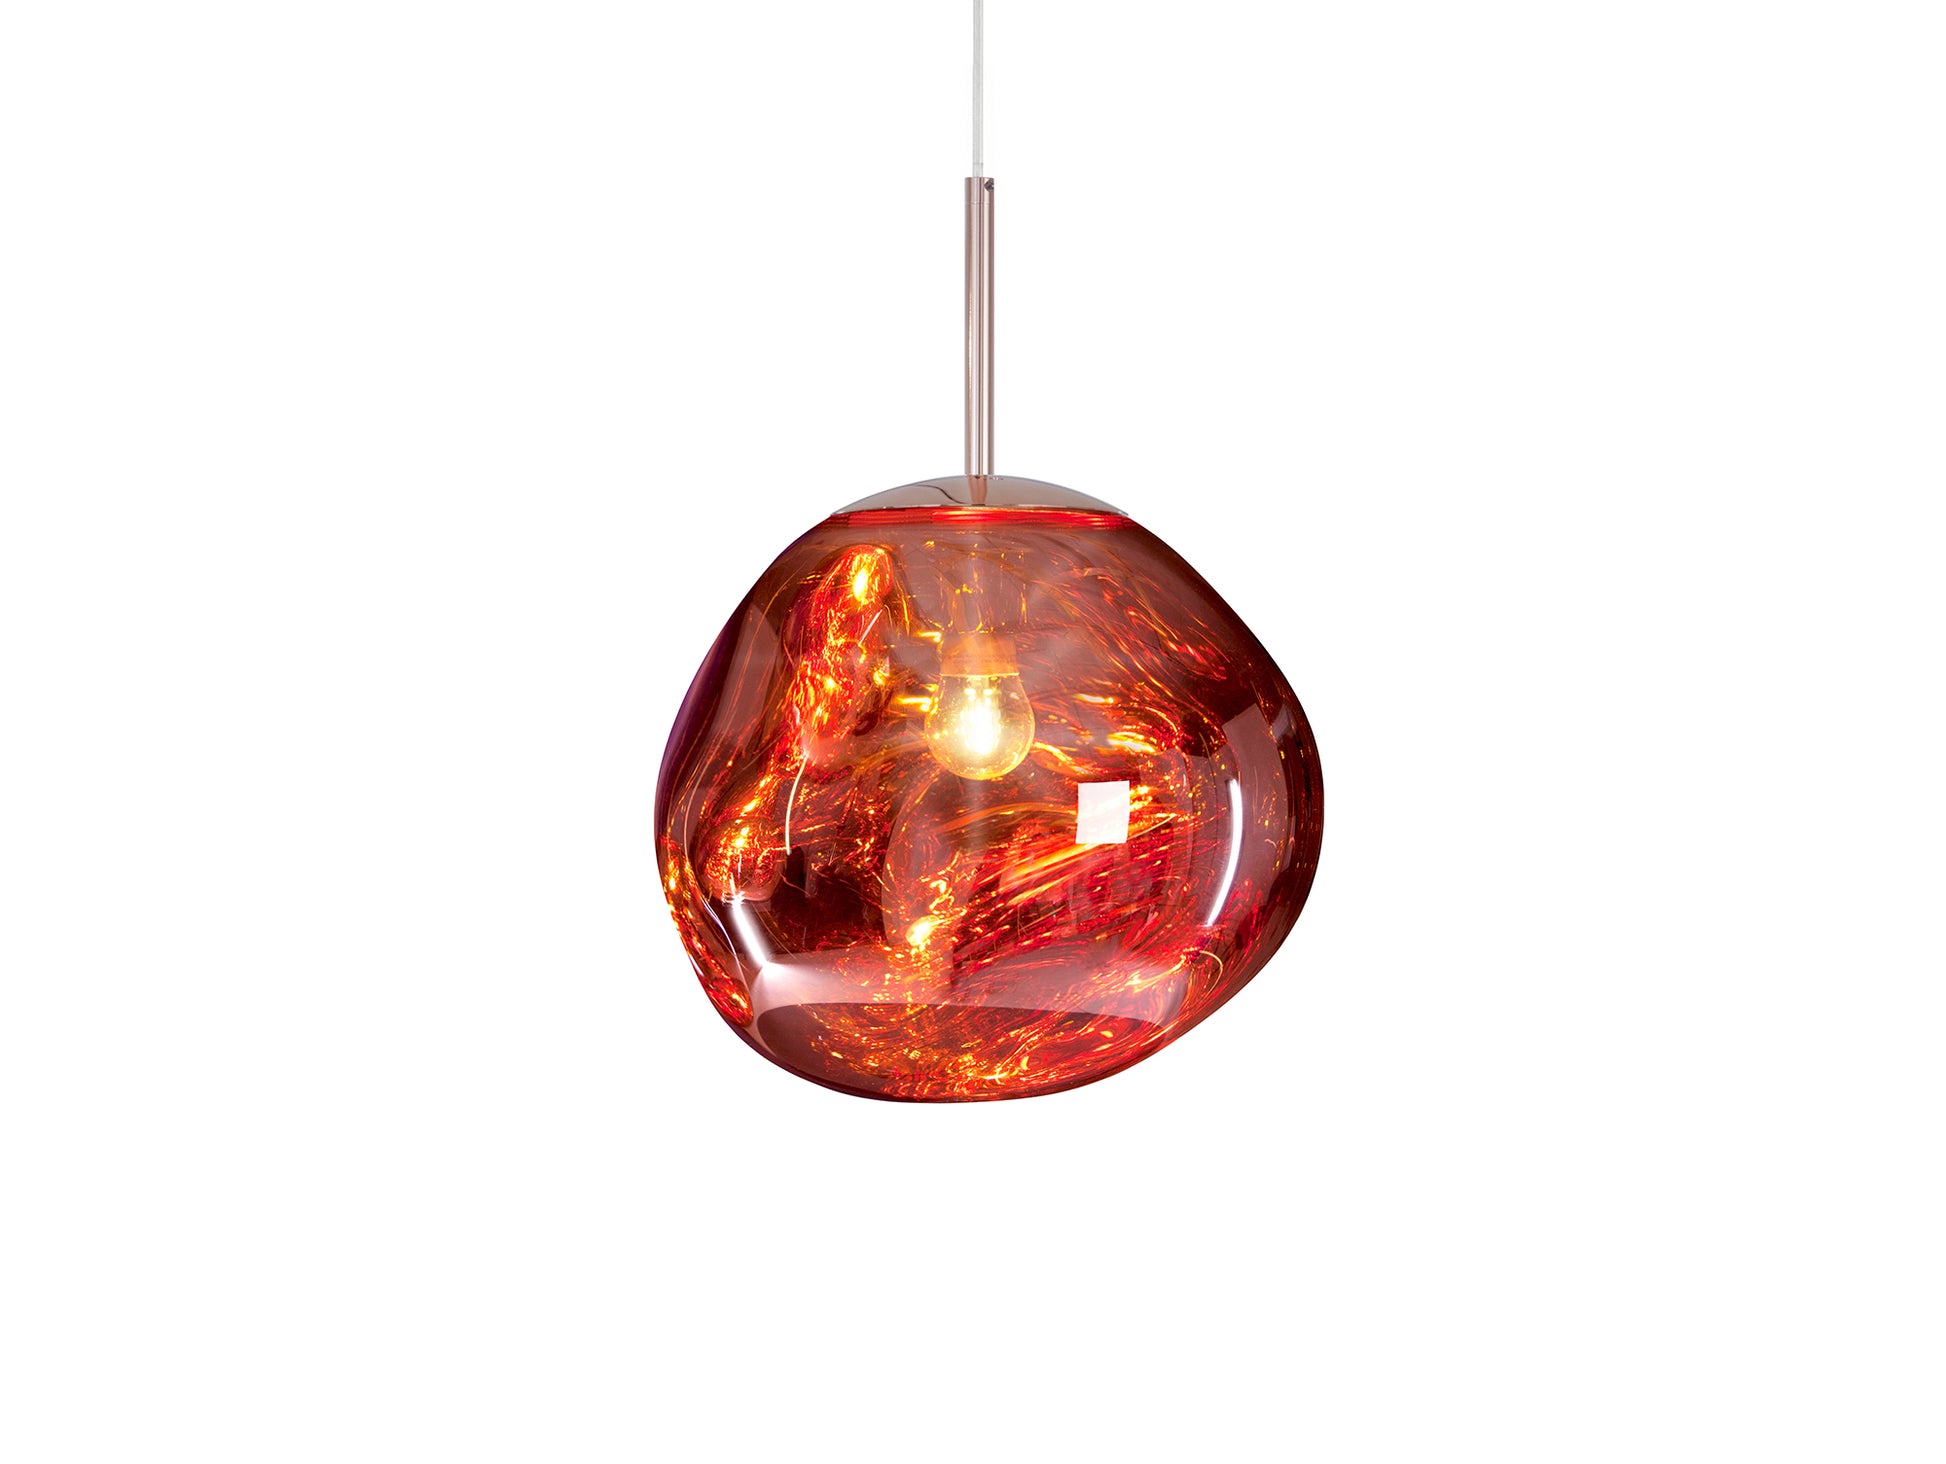 Melt LED Mini Pendant by Tom Dixon - Copper